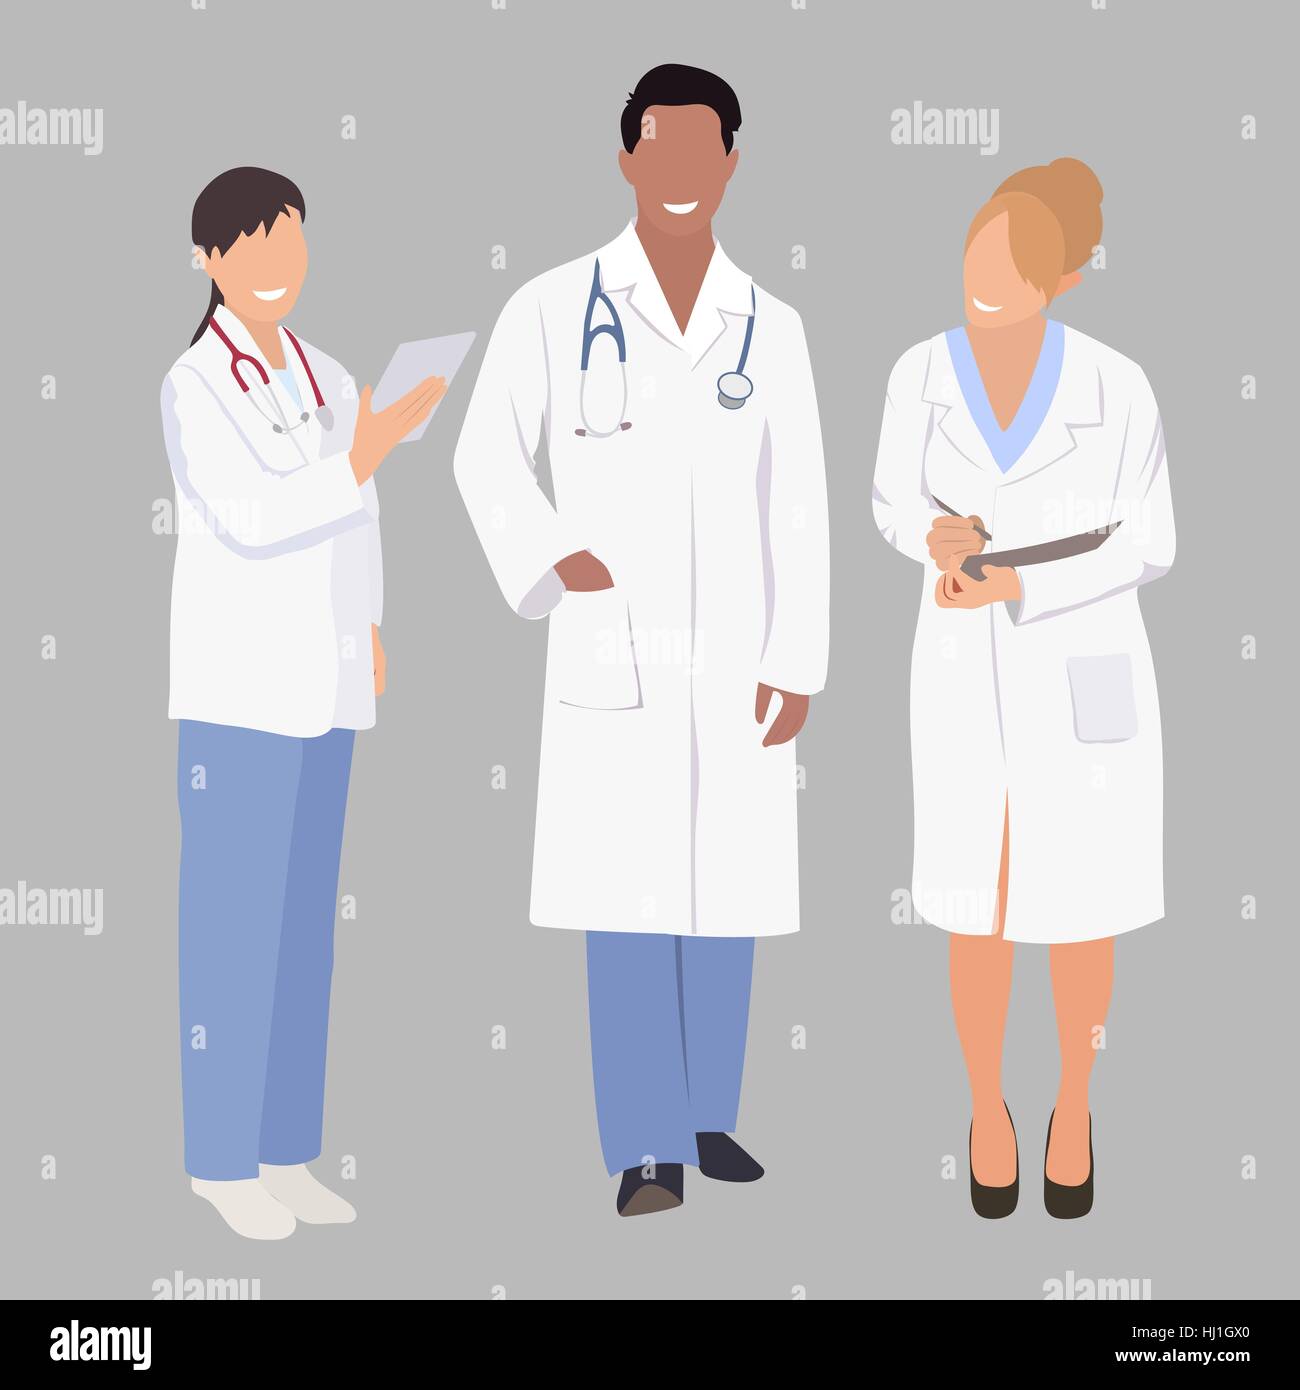 Un groupe de professionnels de la santé. Illustration vecteur de trois  membres d'une équipe médicale. Une équipe médicale de médecins ou  chirurgiens avec blouse blanche et stéthoscope. Médecin en pleine  croissance Image